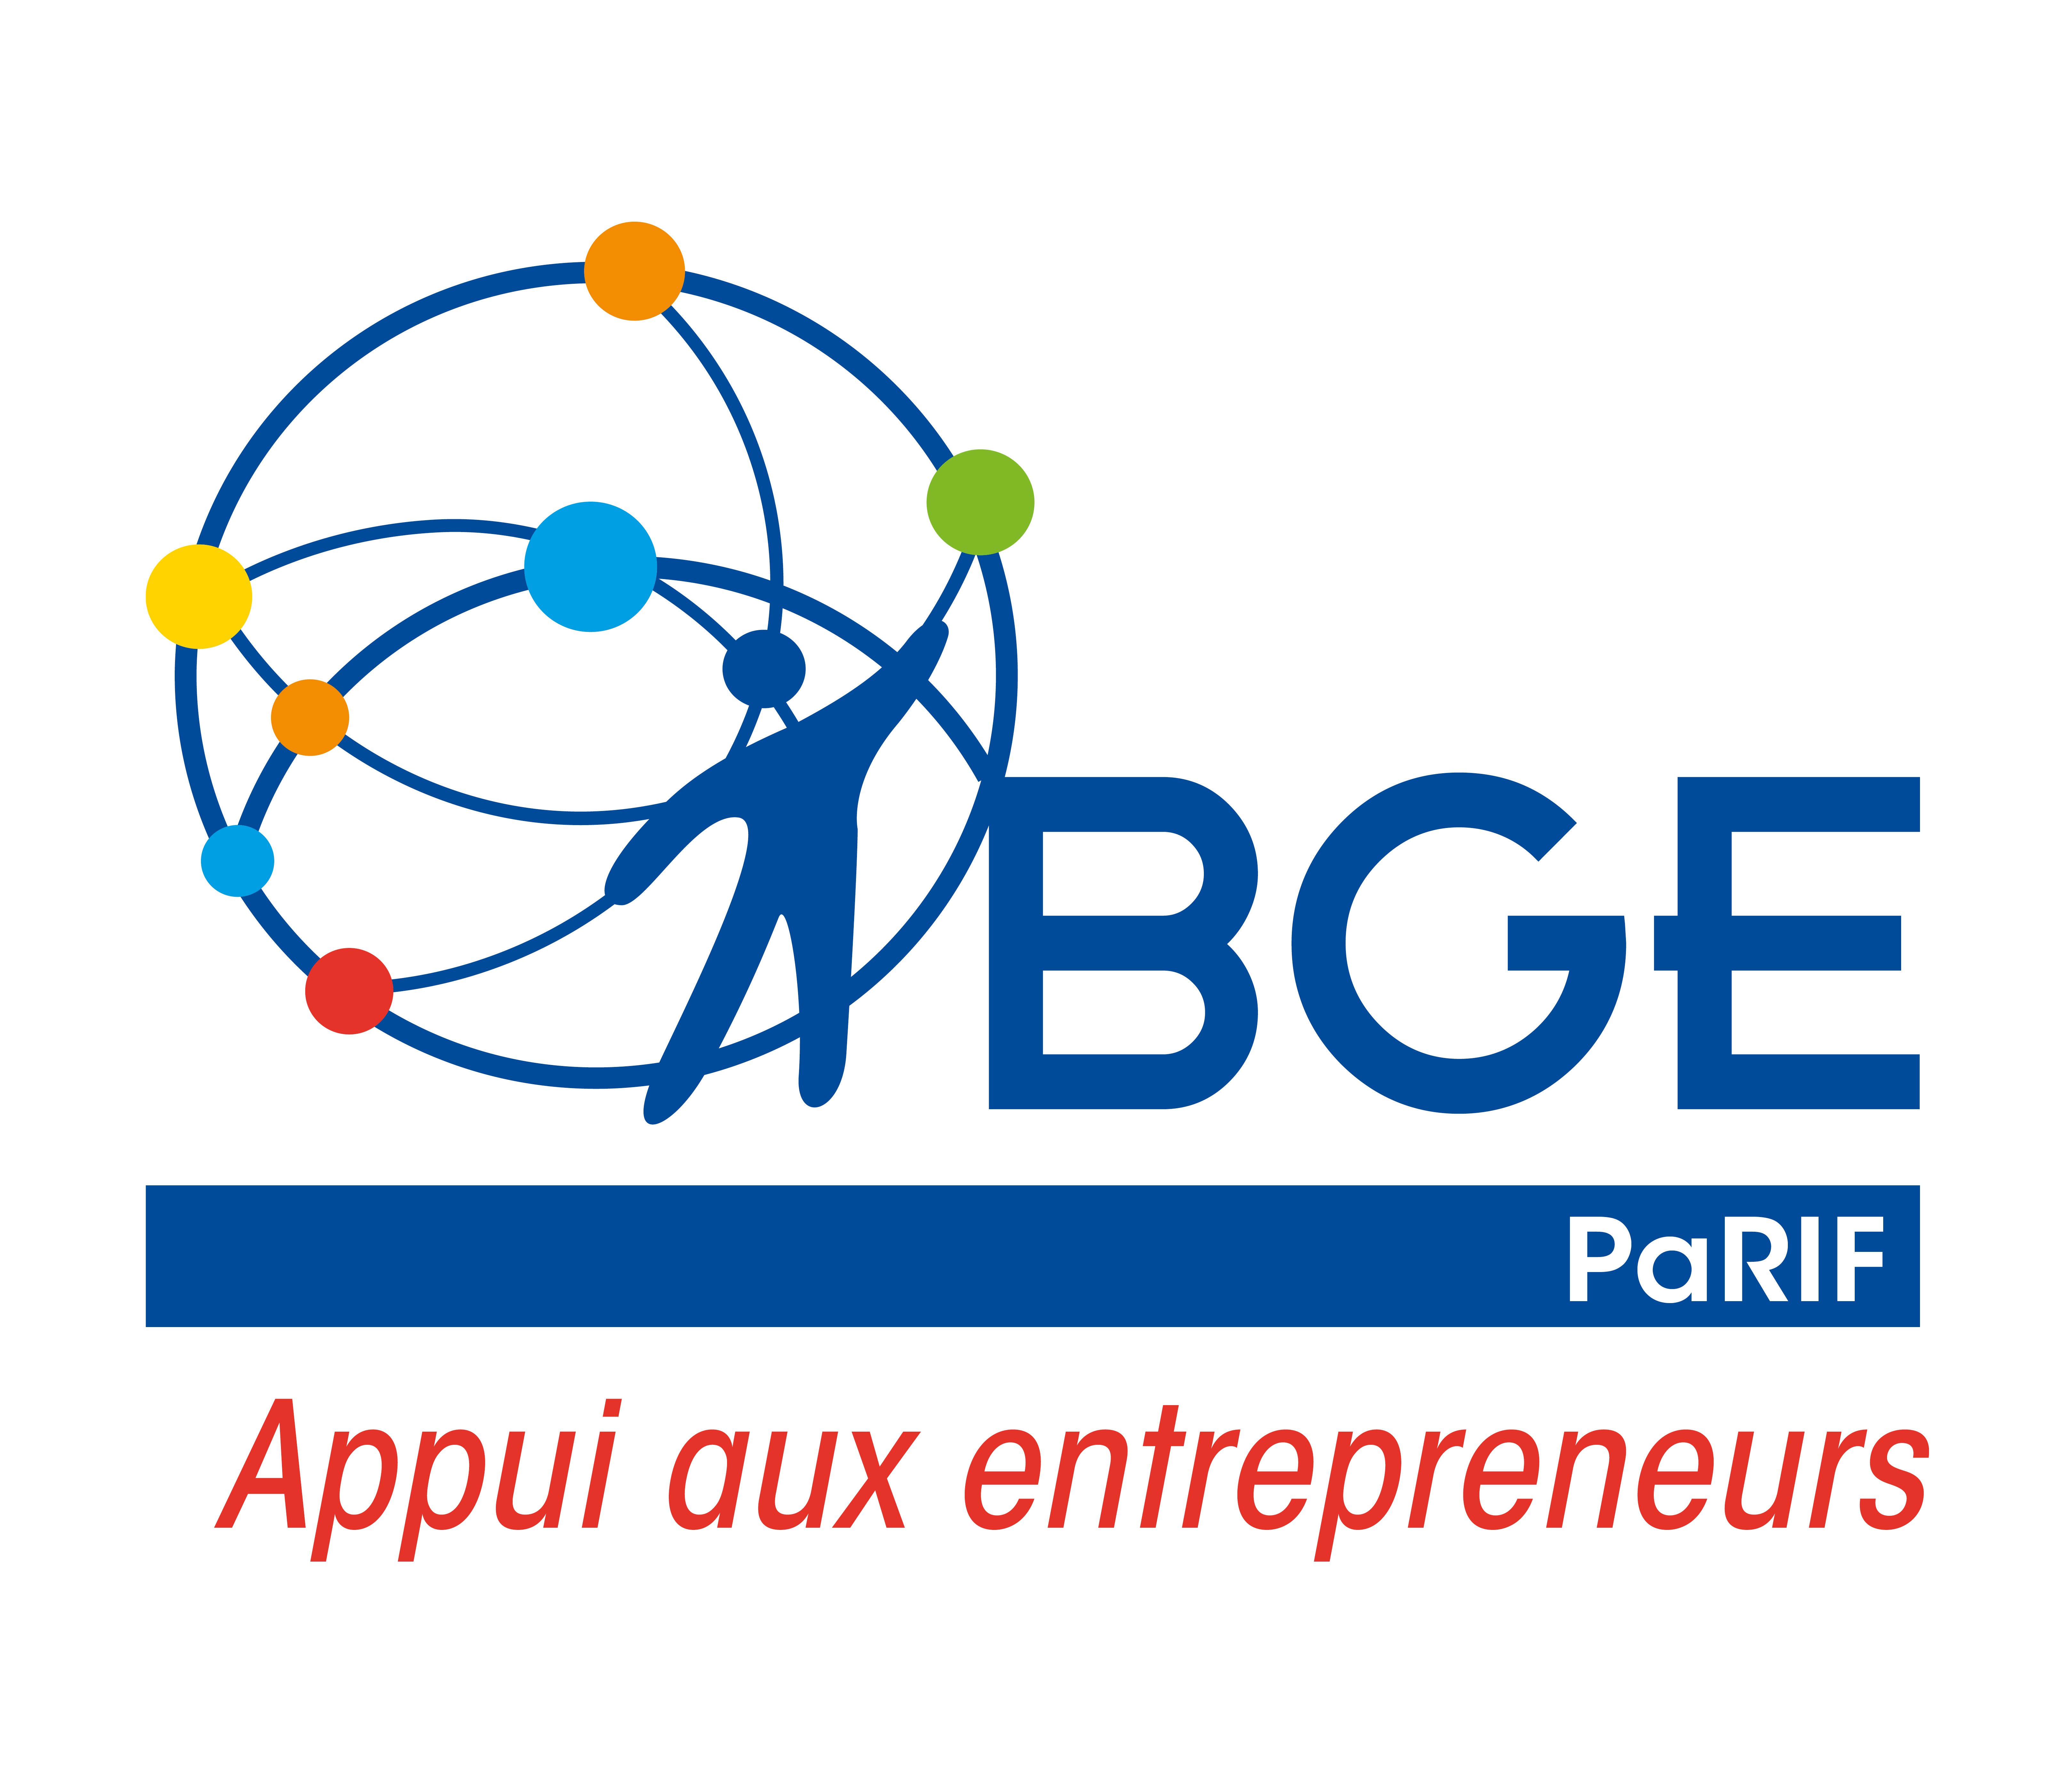 BGE PaRIF Logo